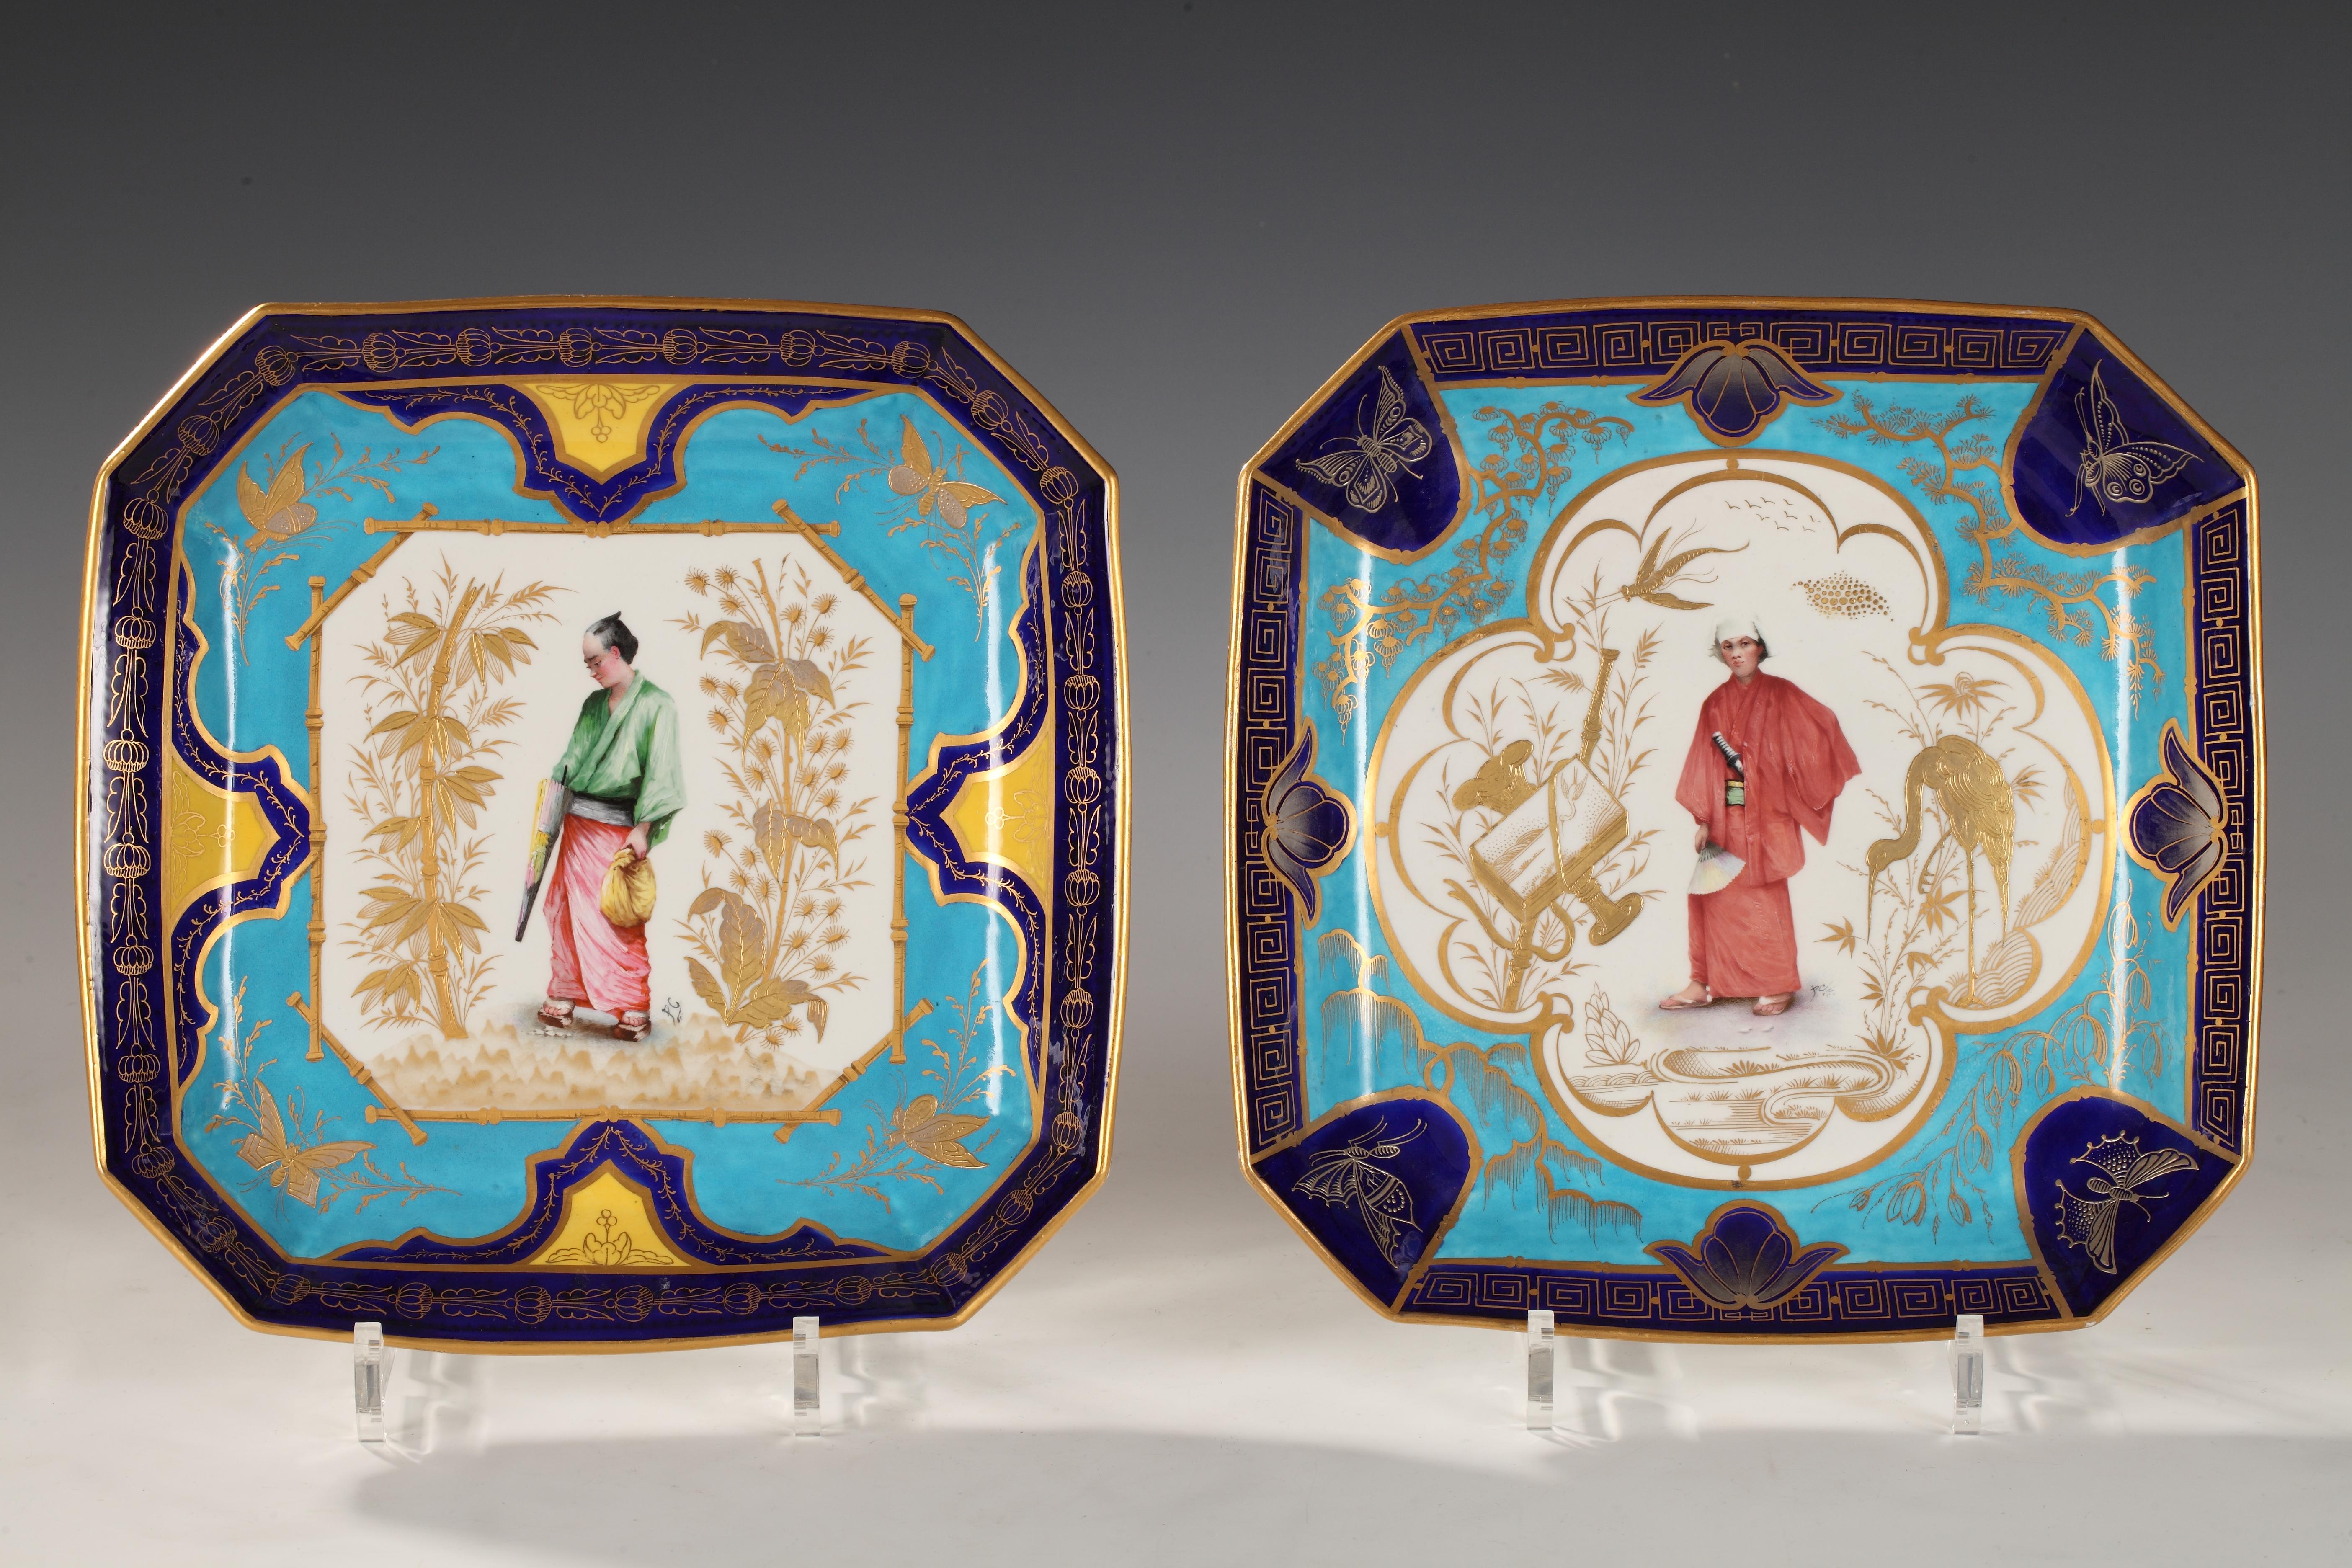 Paire de plats en porcelaine tendre du XVIIIe siècle finement décorés au XIXe siècle de médaillons représentant des personnages de théâtre japonais vêtus de costumes traditionnels, bel ornement en relief doré sur fond polychrome.

Ces plats sont à